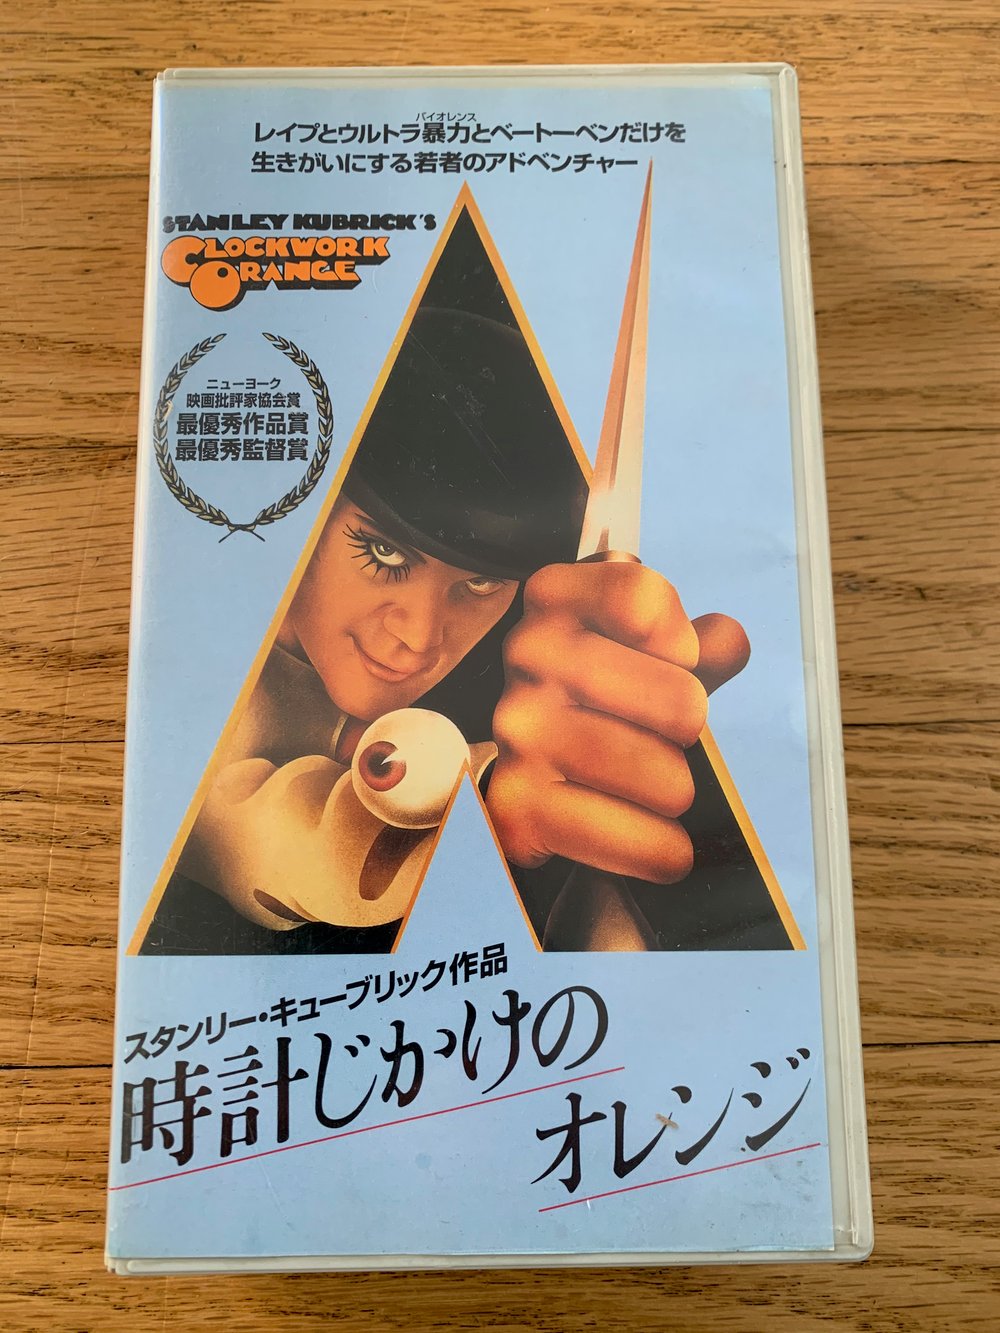 1971 A CLOCKWORK ORANGE Warner Brothers Home Video - Japan